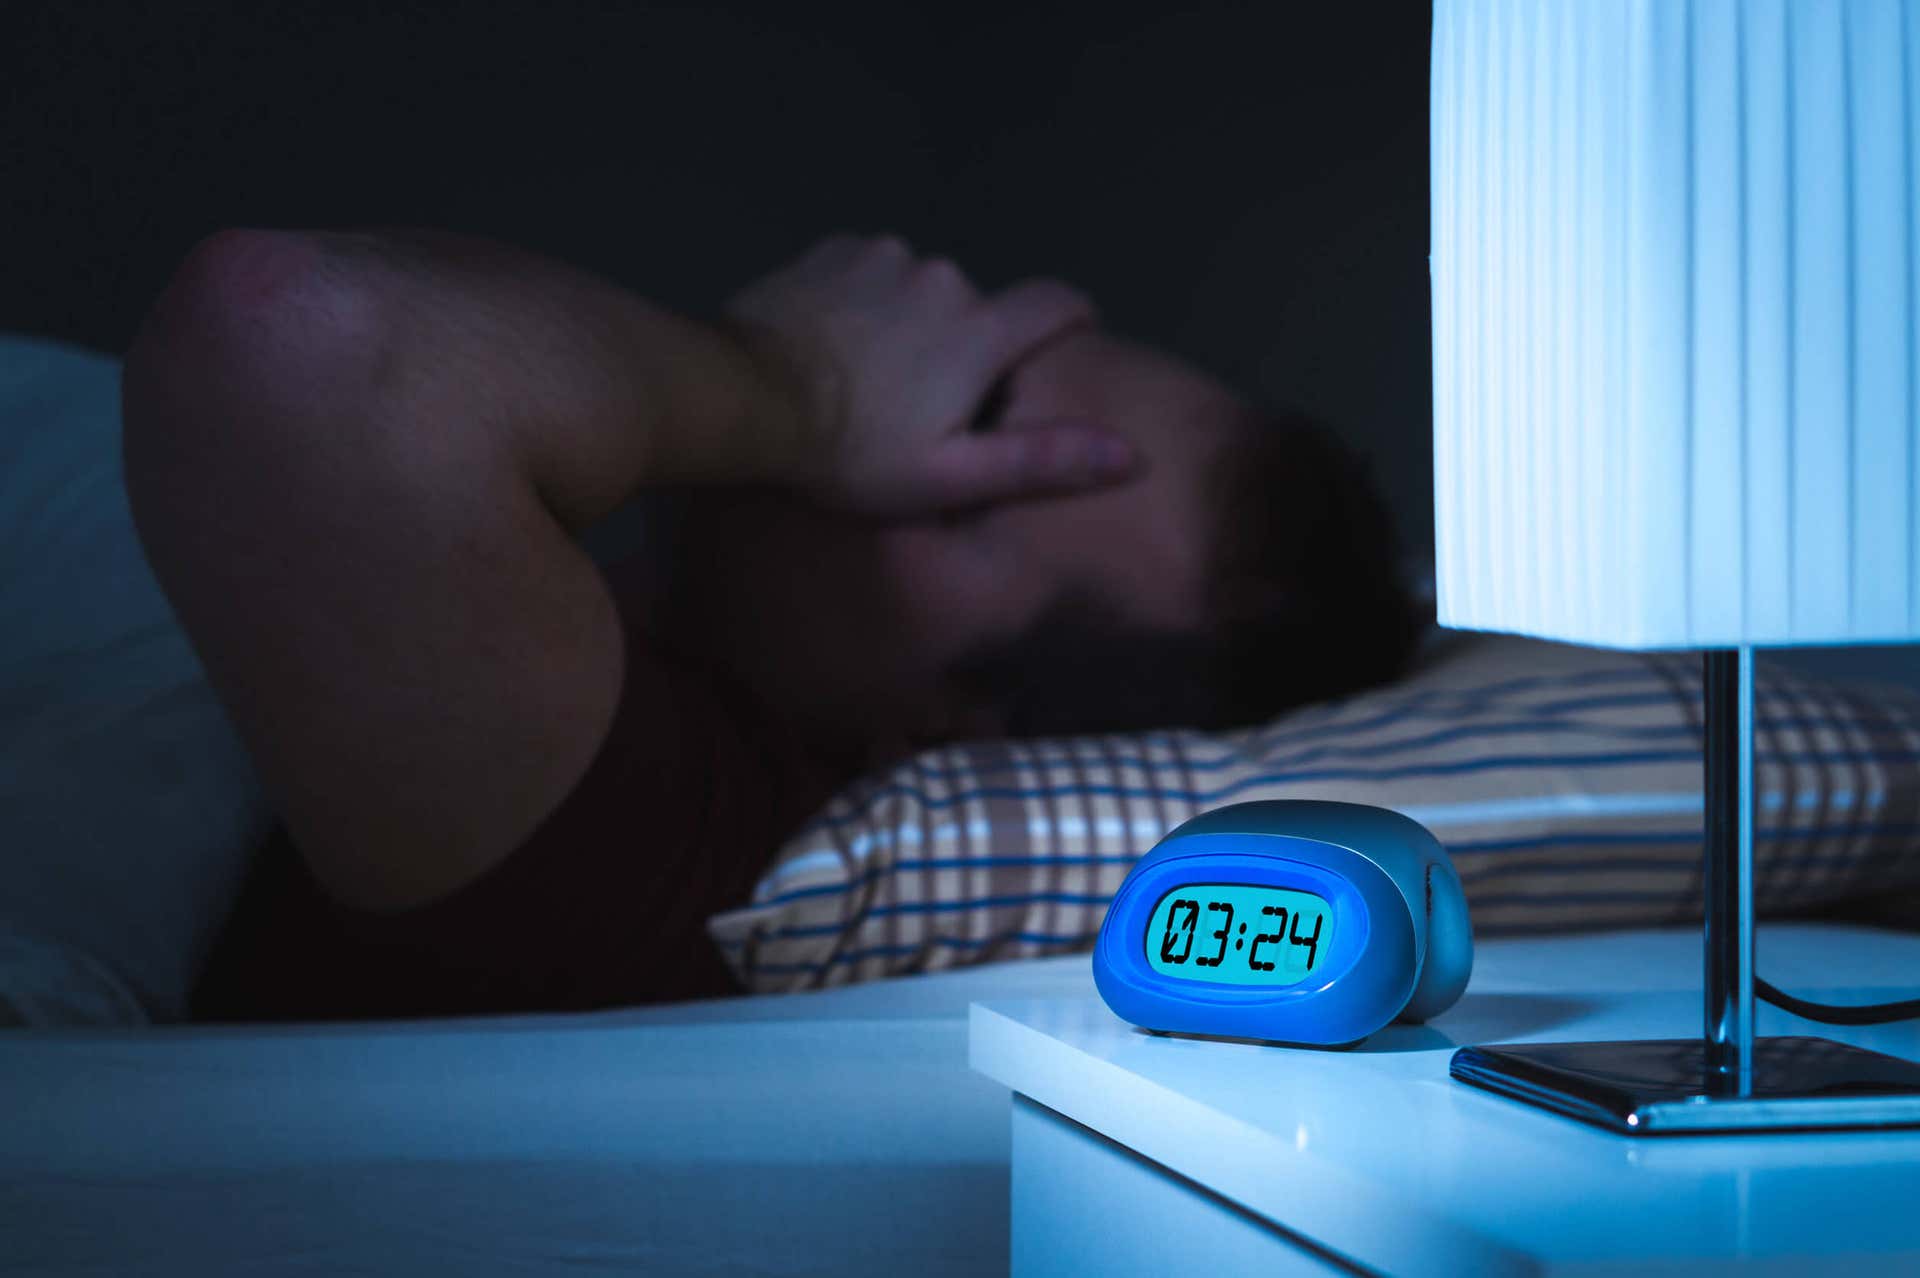 Quais são as alterações nos padrões de sono?